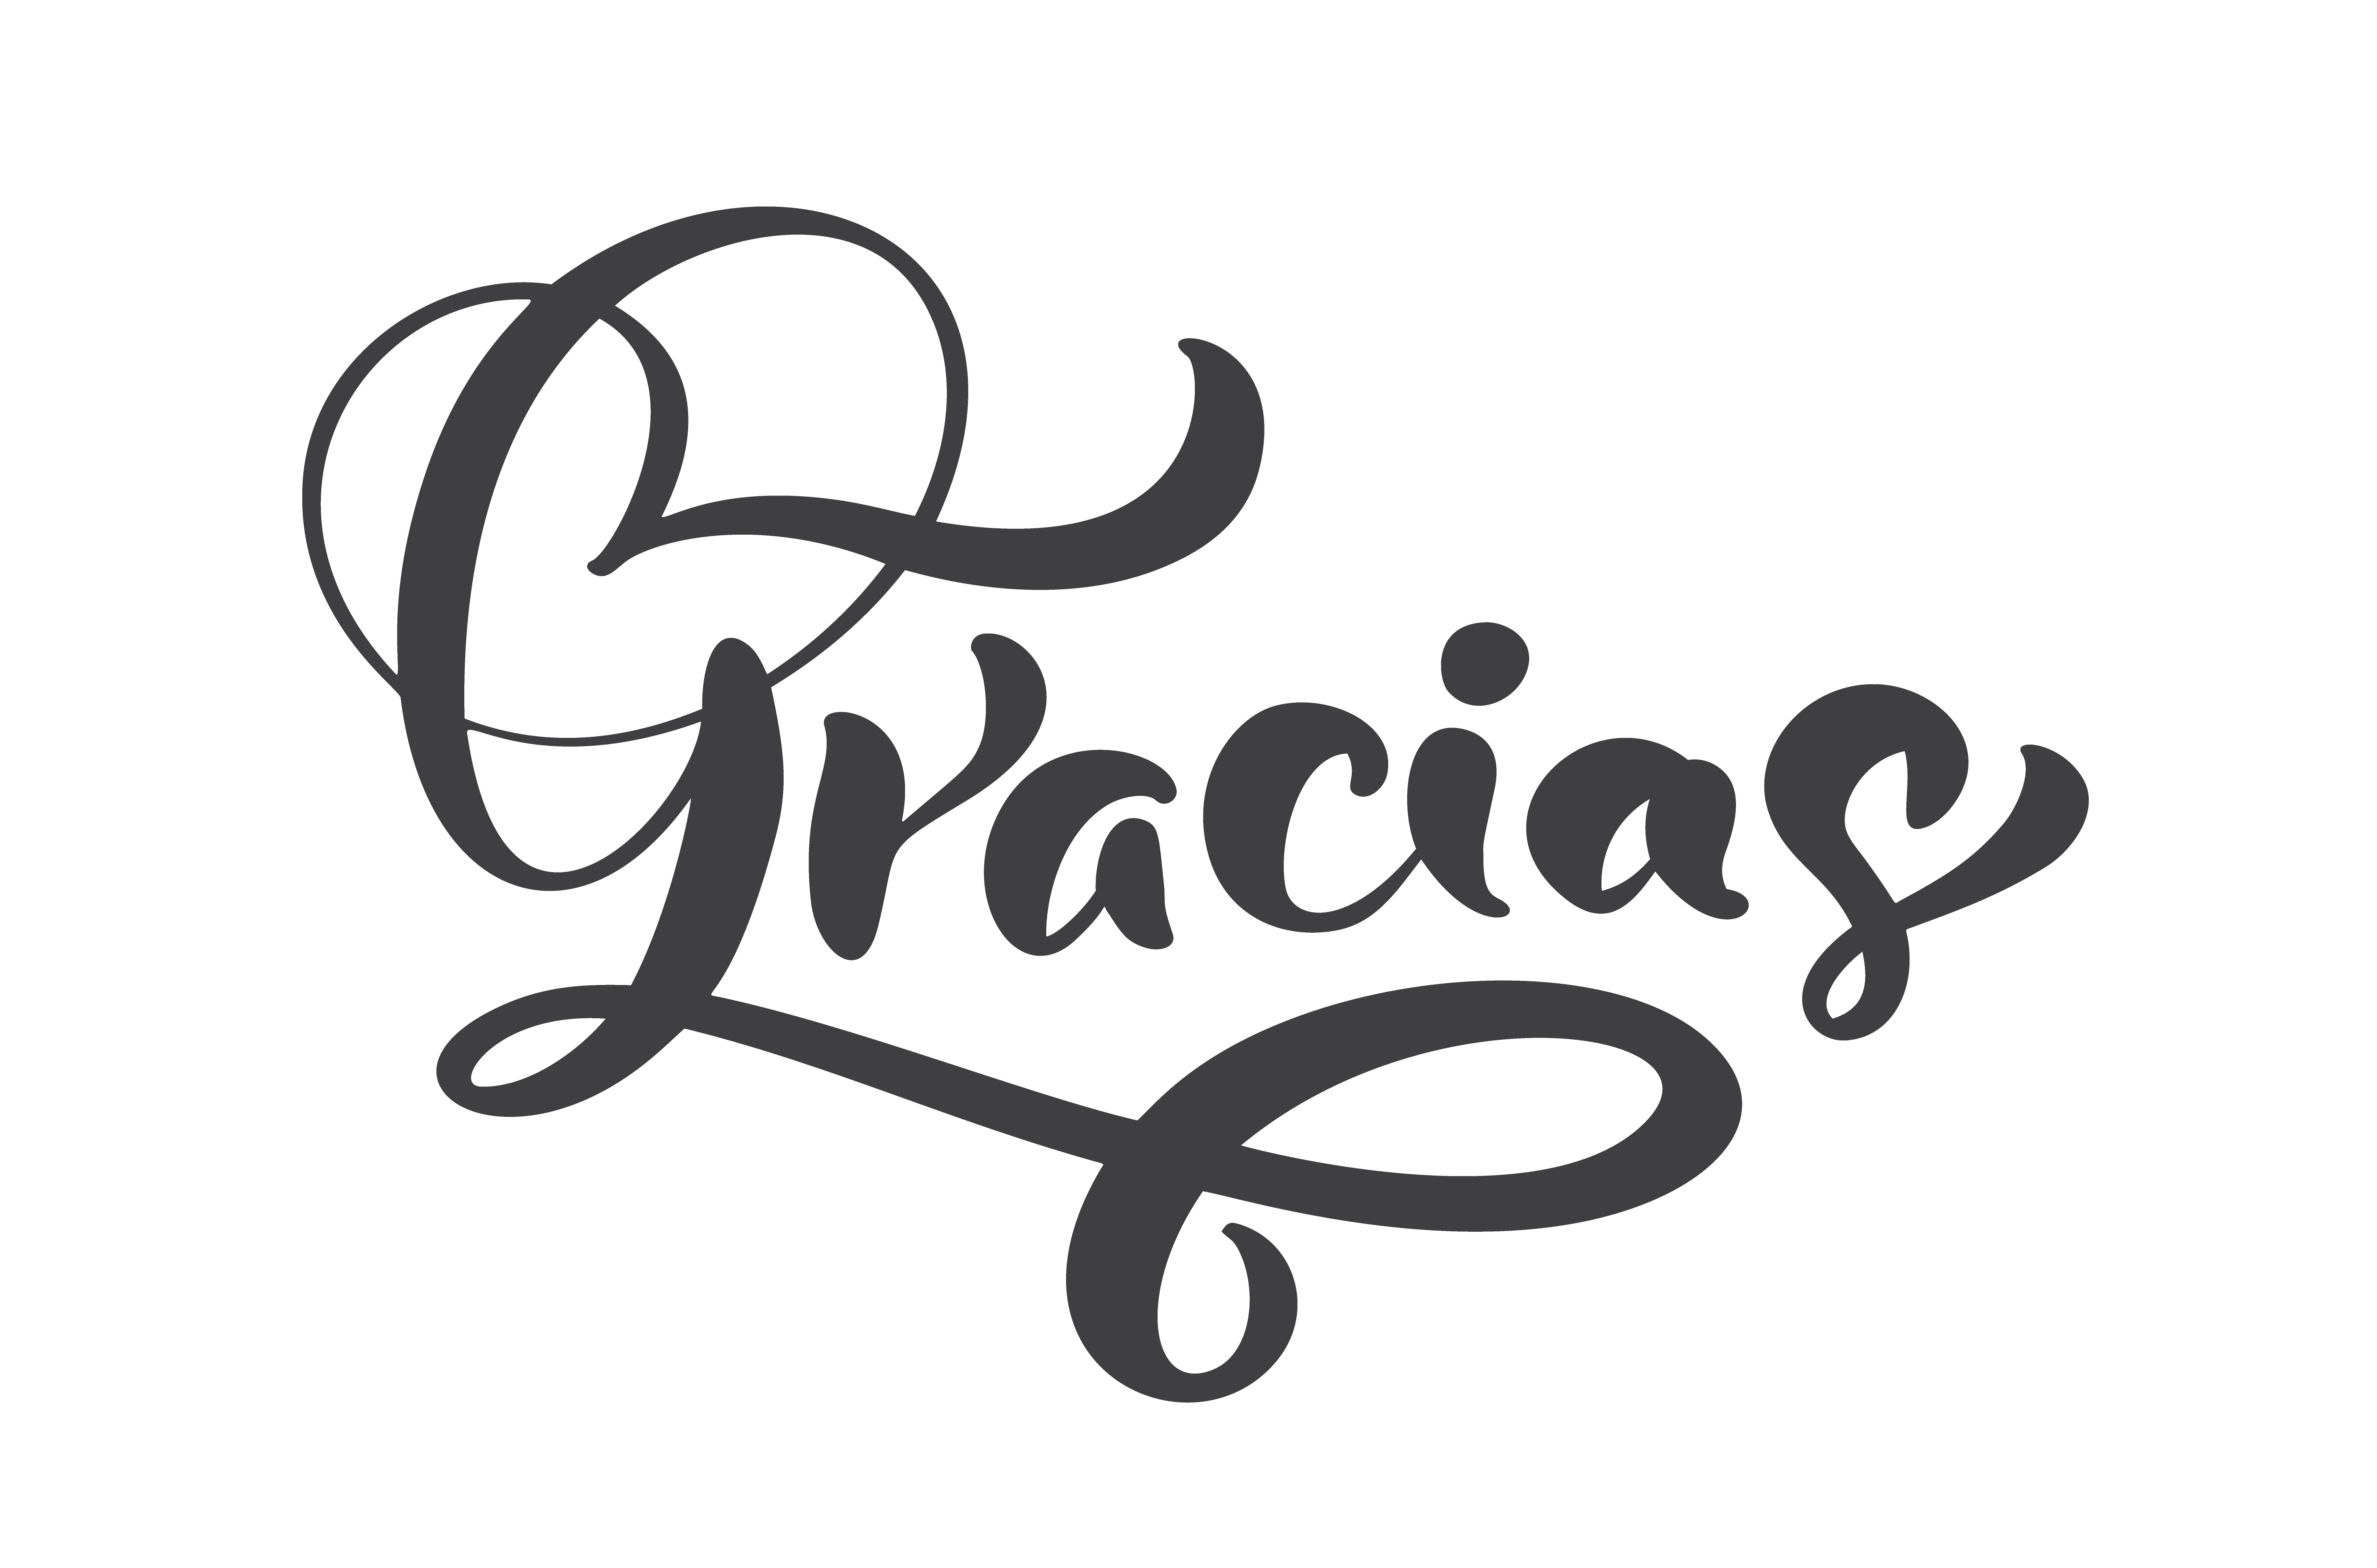 "Gracias" hand written lettering 375388 Vector Art at Vecteezy